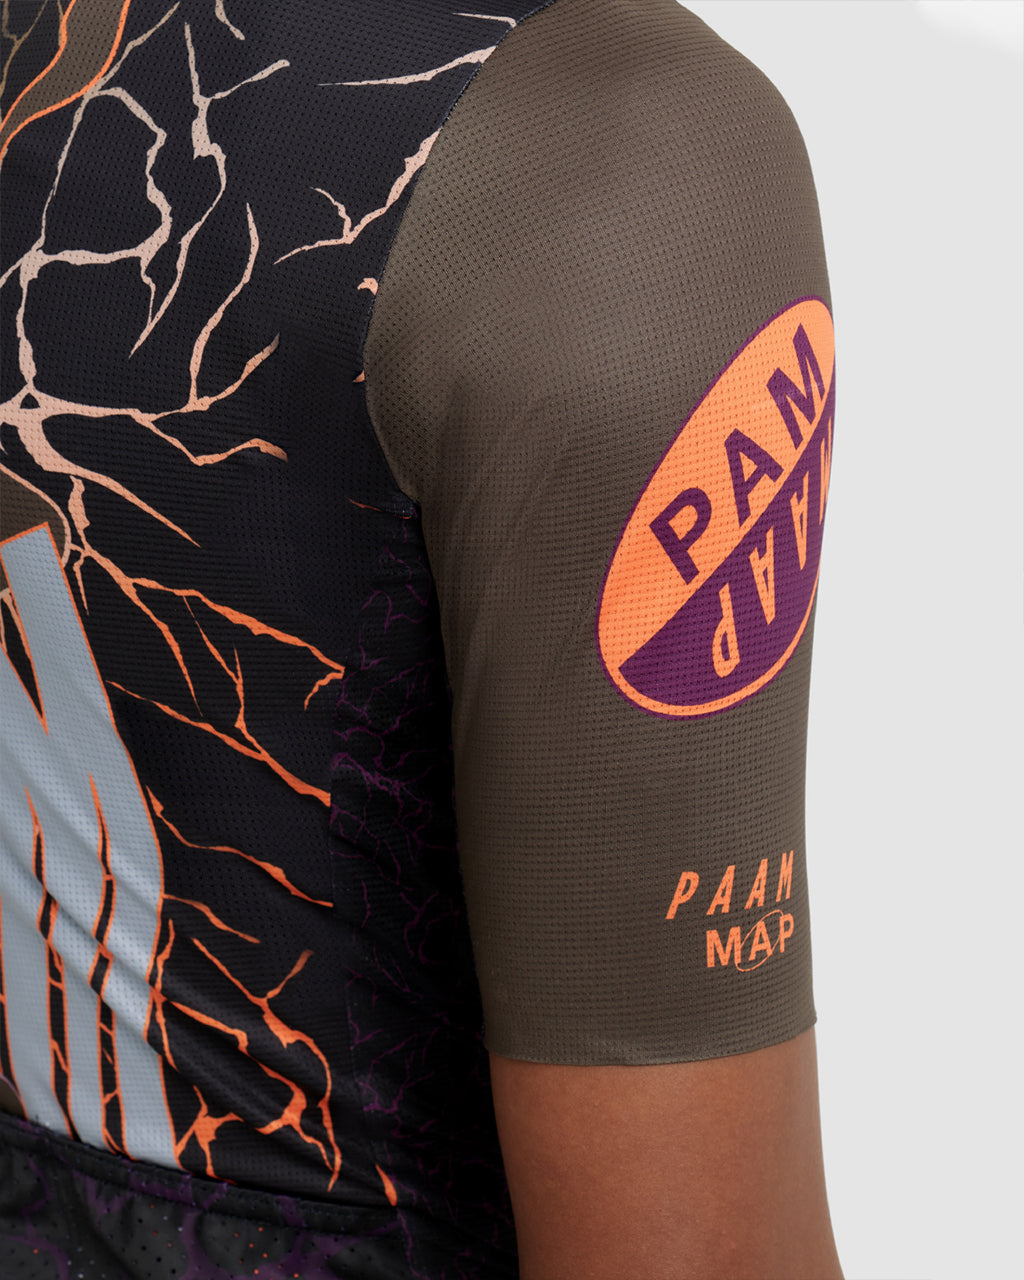 MAAP X PAM Wild Team Jersey - MAAP Cycling Apparel